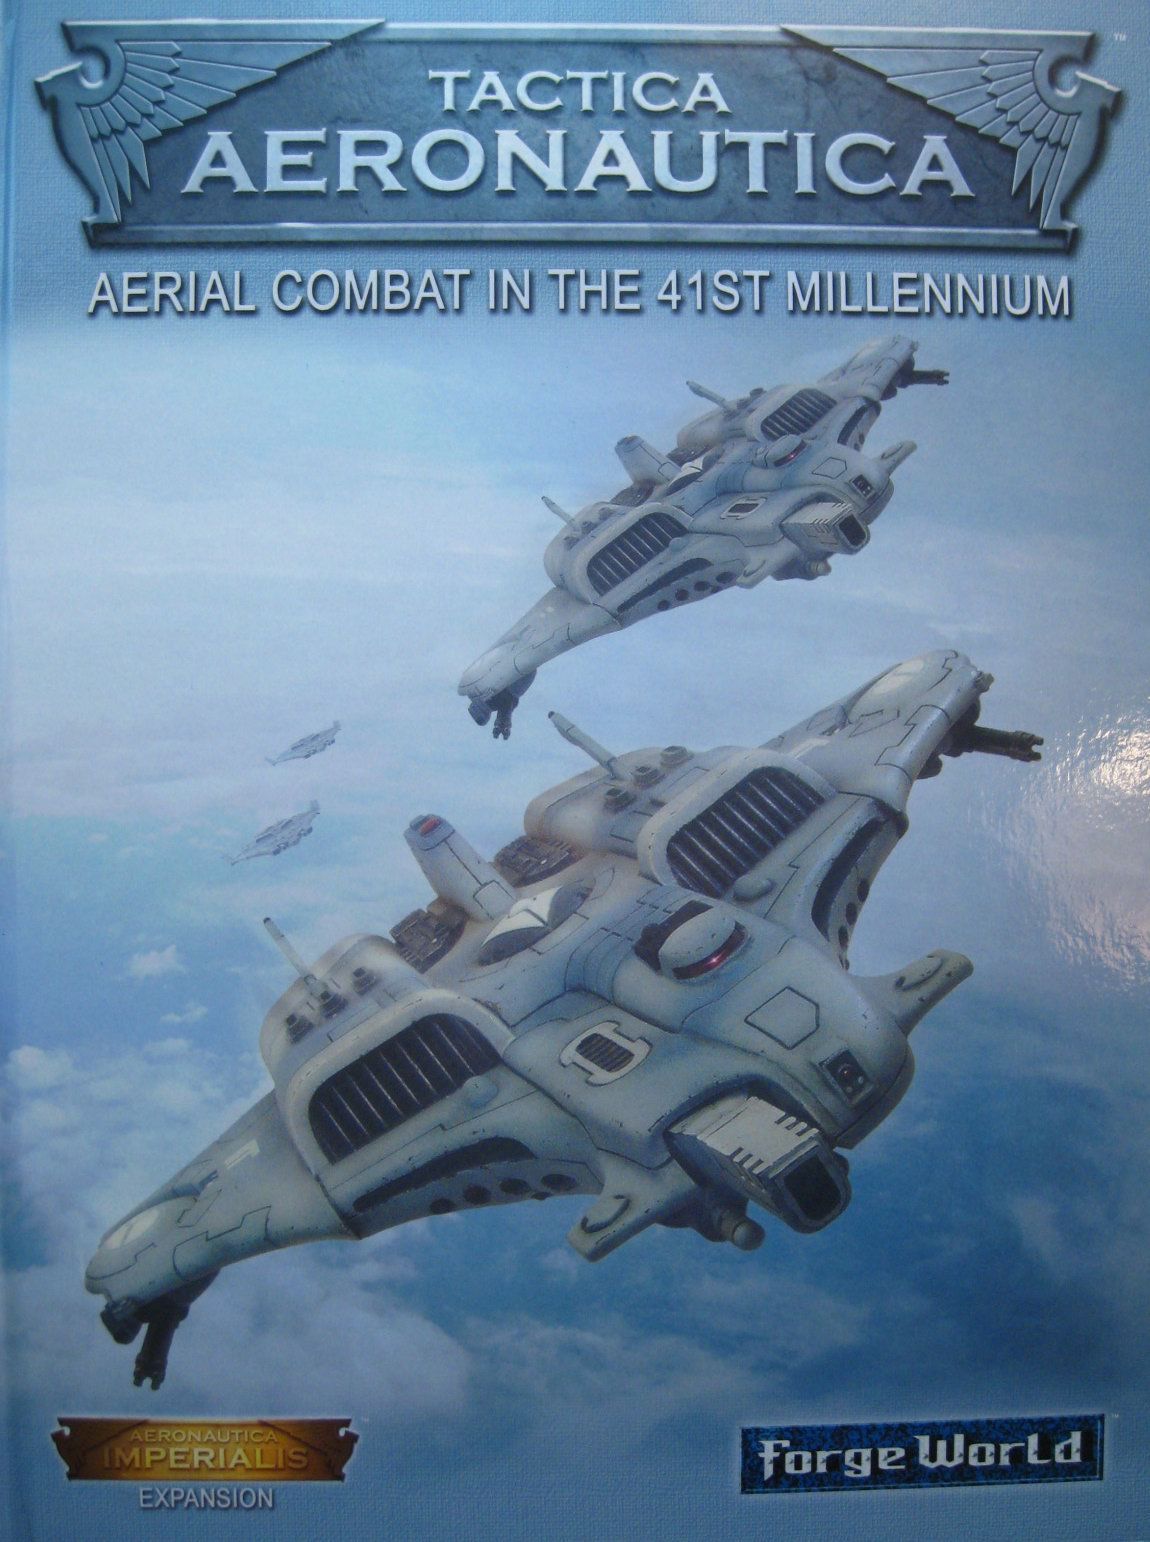 Aeronautica Imperialis: Tactica Aeronautica